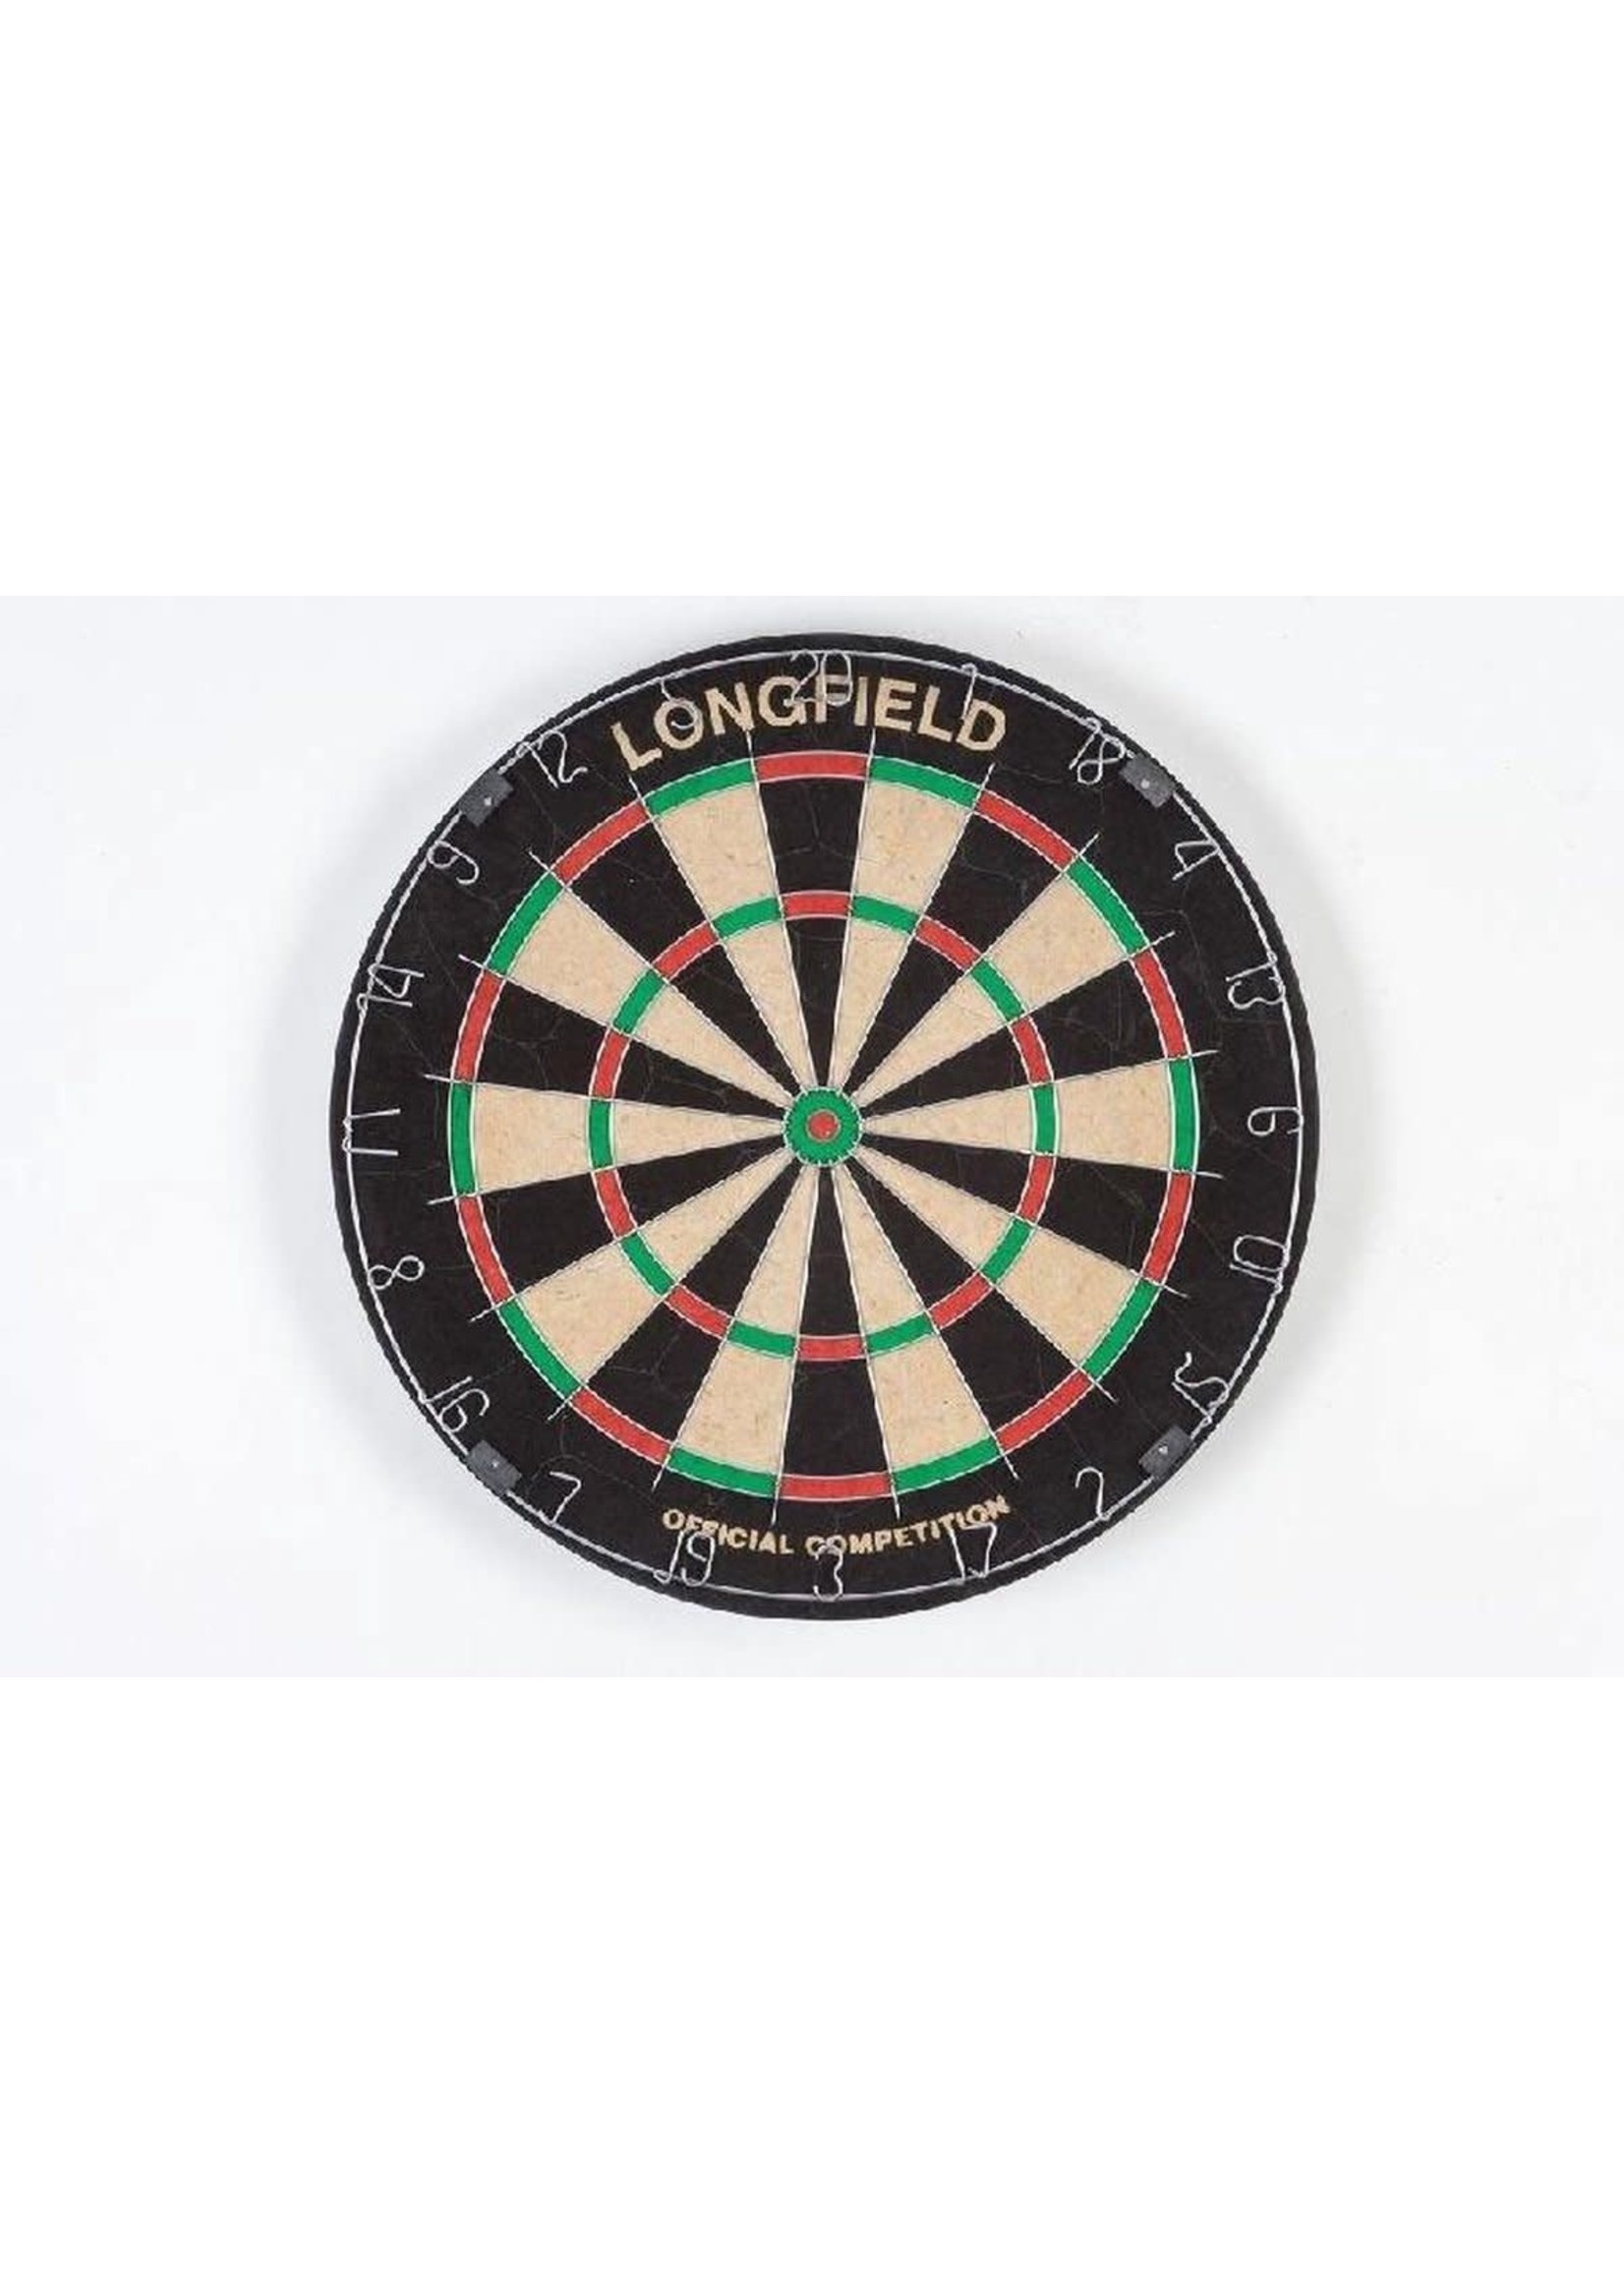 Moet combineren opleiding Longfield Dartbord PRO 501 – Chinese Sisal - Speelgoed Wierden